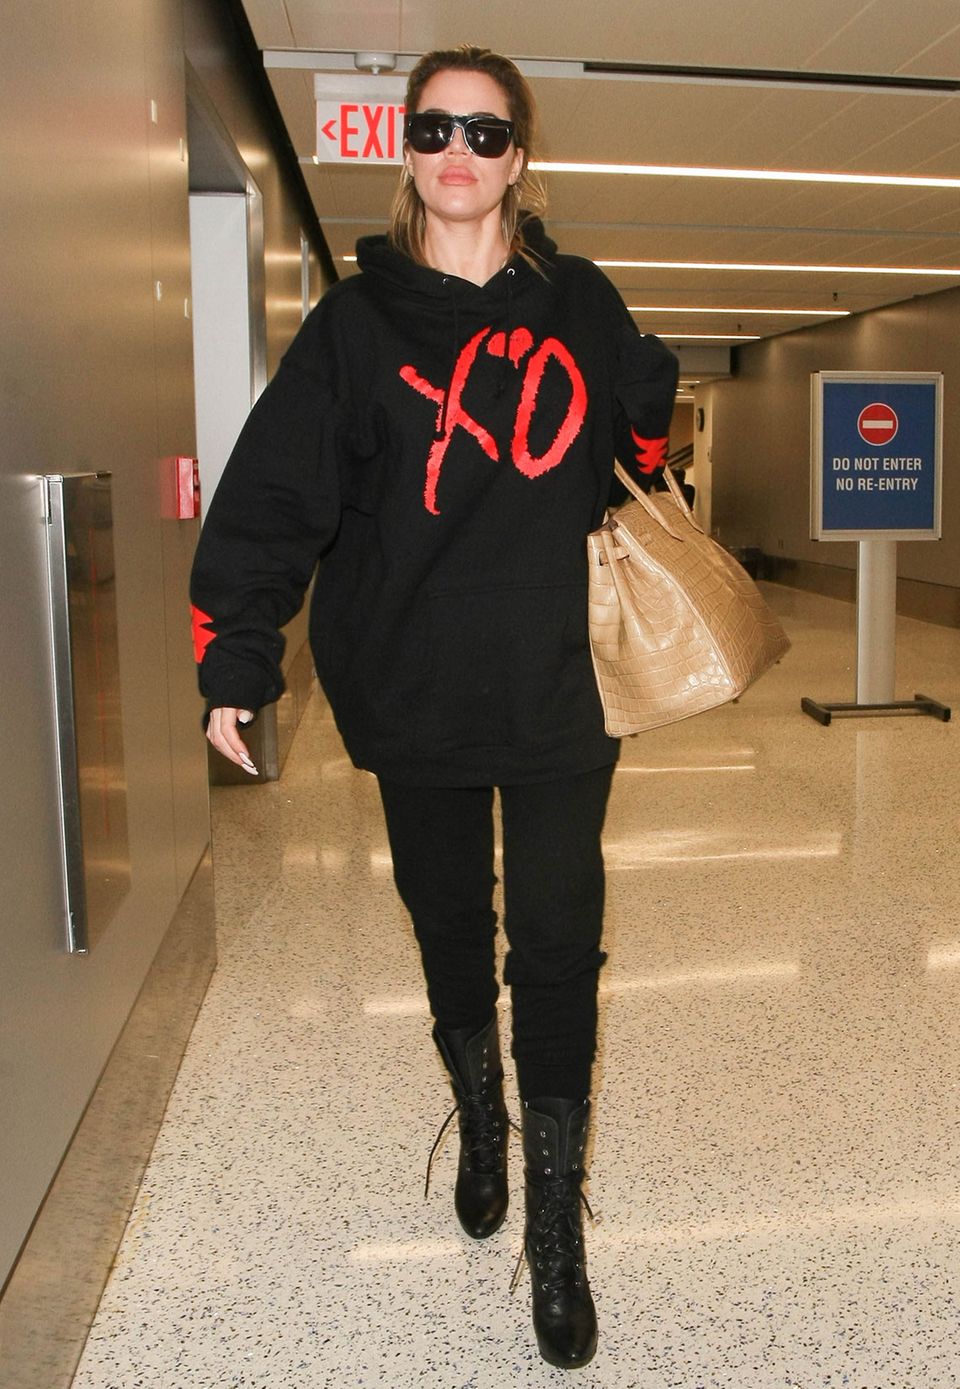 Nanu, was für eine verrückte Zusammenstellung. Khloe Kardashian reist zwar im lässigen Gemütlich-Look mit Sweater und schmaler Hose, akzentuiert diesen jedoch mit einer sündhaft teuren "Birkin Bag" aus Krokoleder, die schnell mal 40.000 Euro kosten kann.